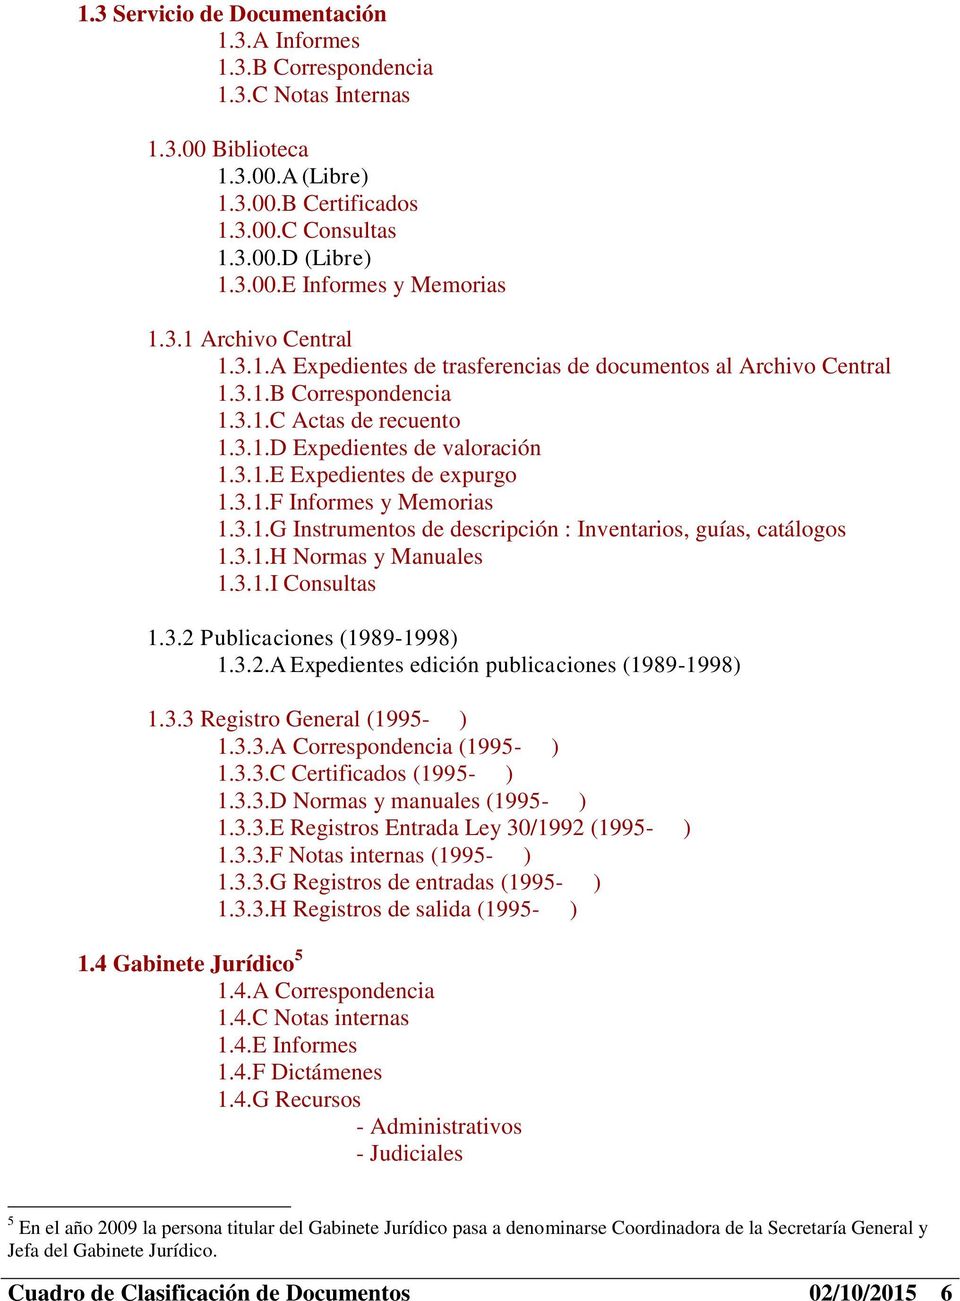 3.1.F Informes y Memorias 1.3.1.G Instrumentos de descripción : Inventarios, guías, catálogos 1.3.1.H Normas y Manuales 1.3.1.I Consultas 1.3.2 Publicaciones (1989-1998) 1.3.2.A Expedientes edición publicaciones (1989-1998) 1.